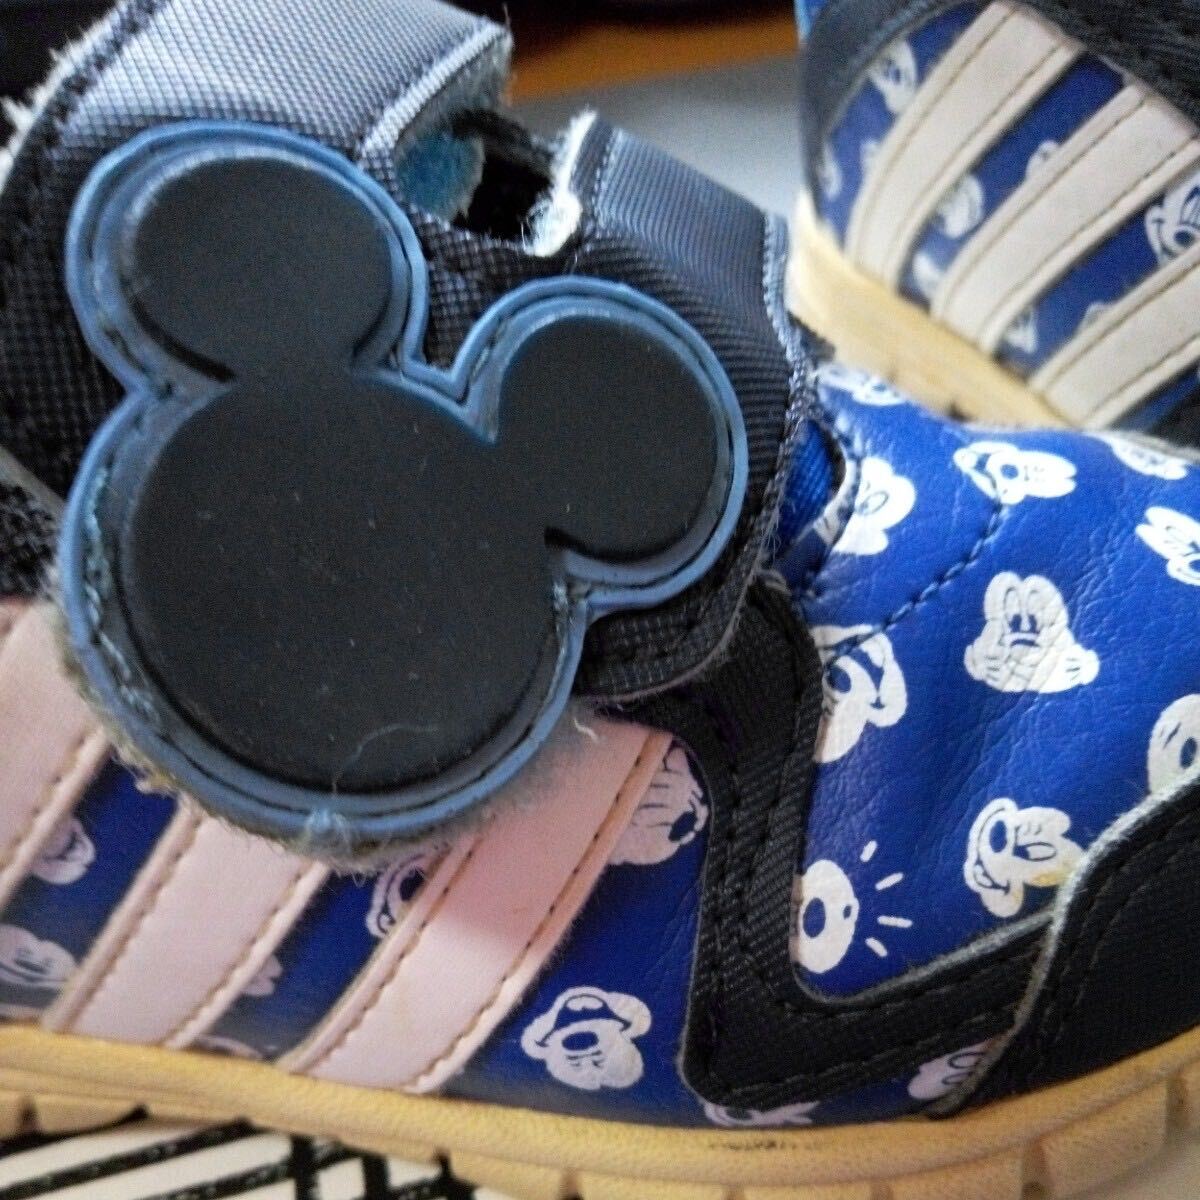  ребенок обувь спортивные туфли Disney Mickey Adidas темно-синий цвет размер примерно 15×6. прекрасный товар 